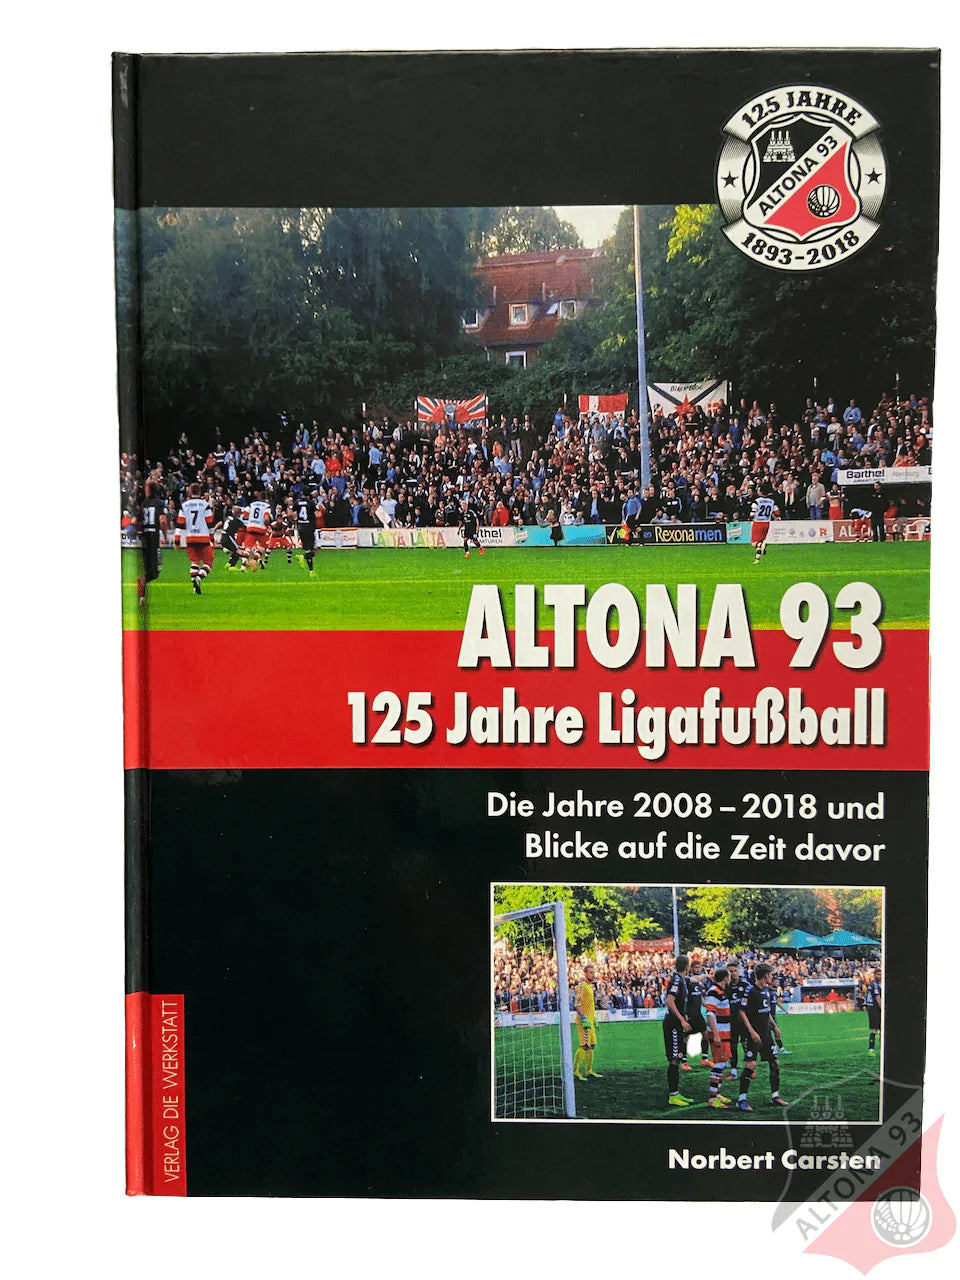 ALTONA 93. 125 JAHRE LIGAFUSSBALL: DIE JAHRE 2008 – 2018 UND BLICKE AUF DIE ZEIT DAVOR - shop.altona93.de